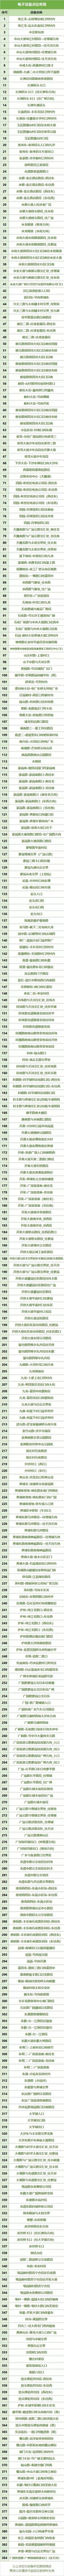 2019年12月1日起广州黄埔区新增384套电子警察